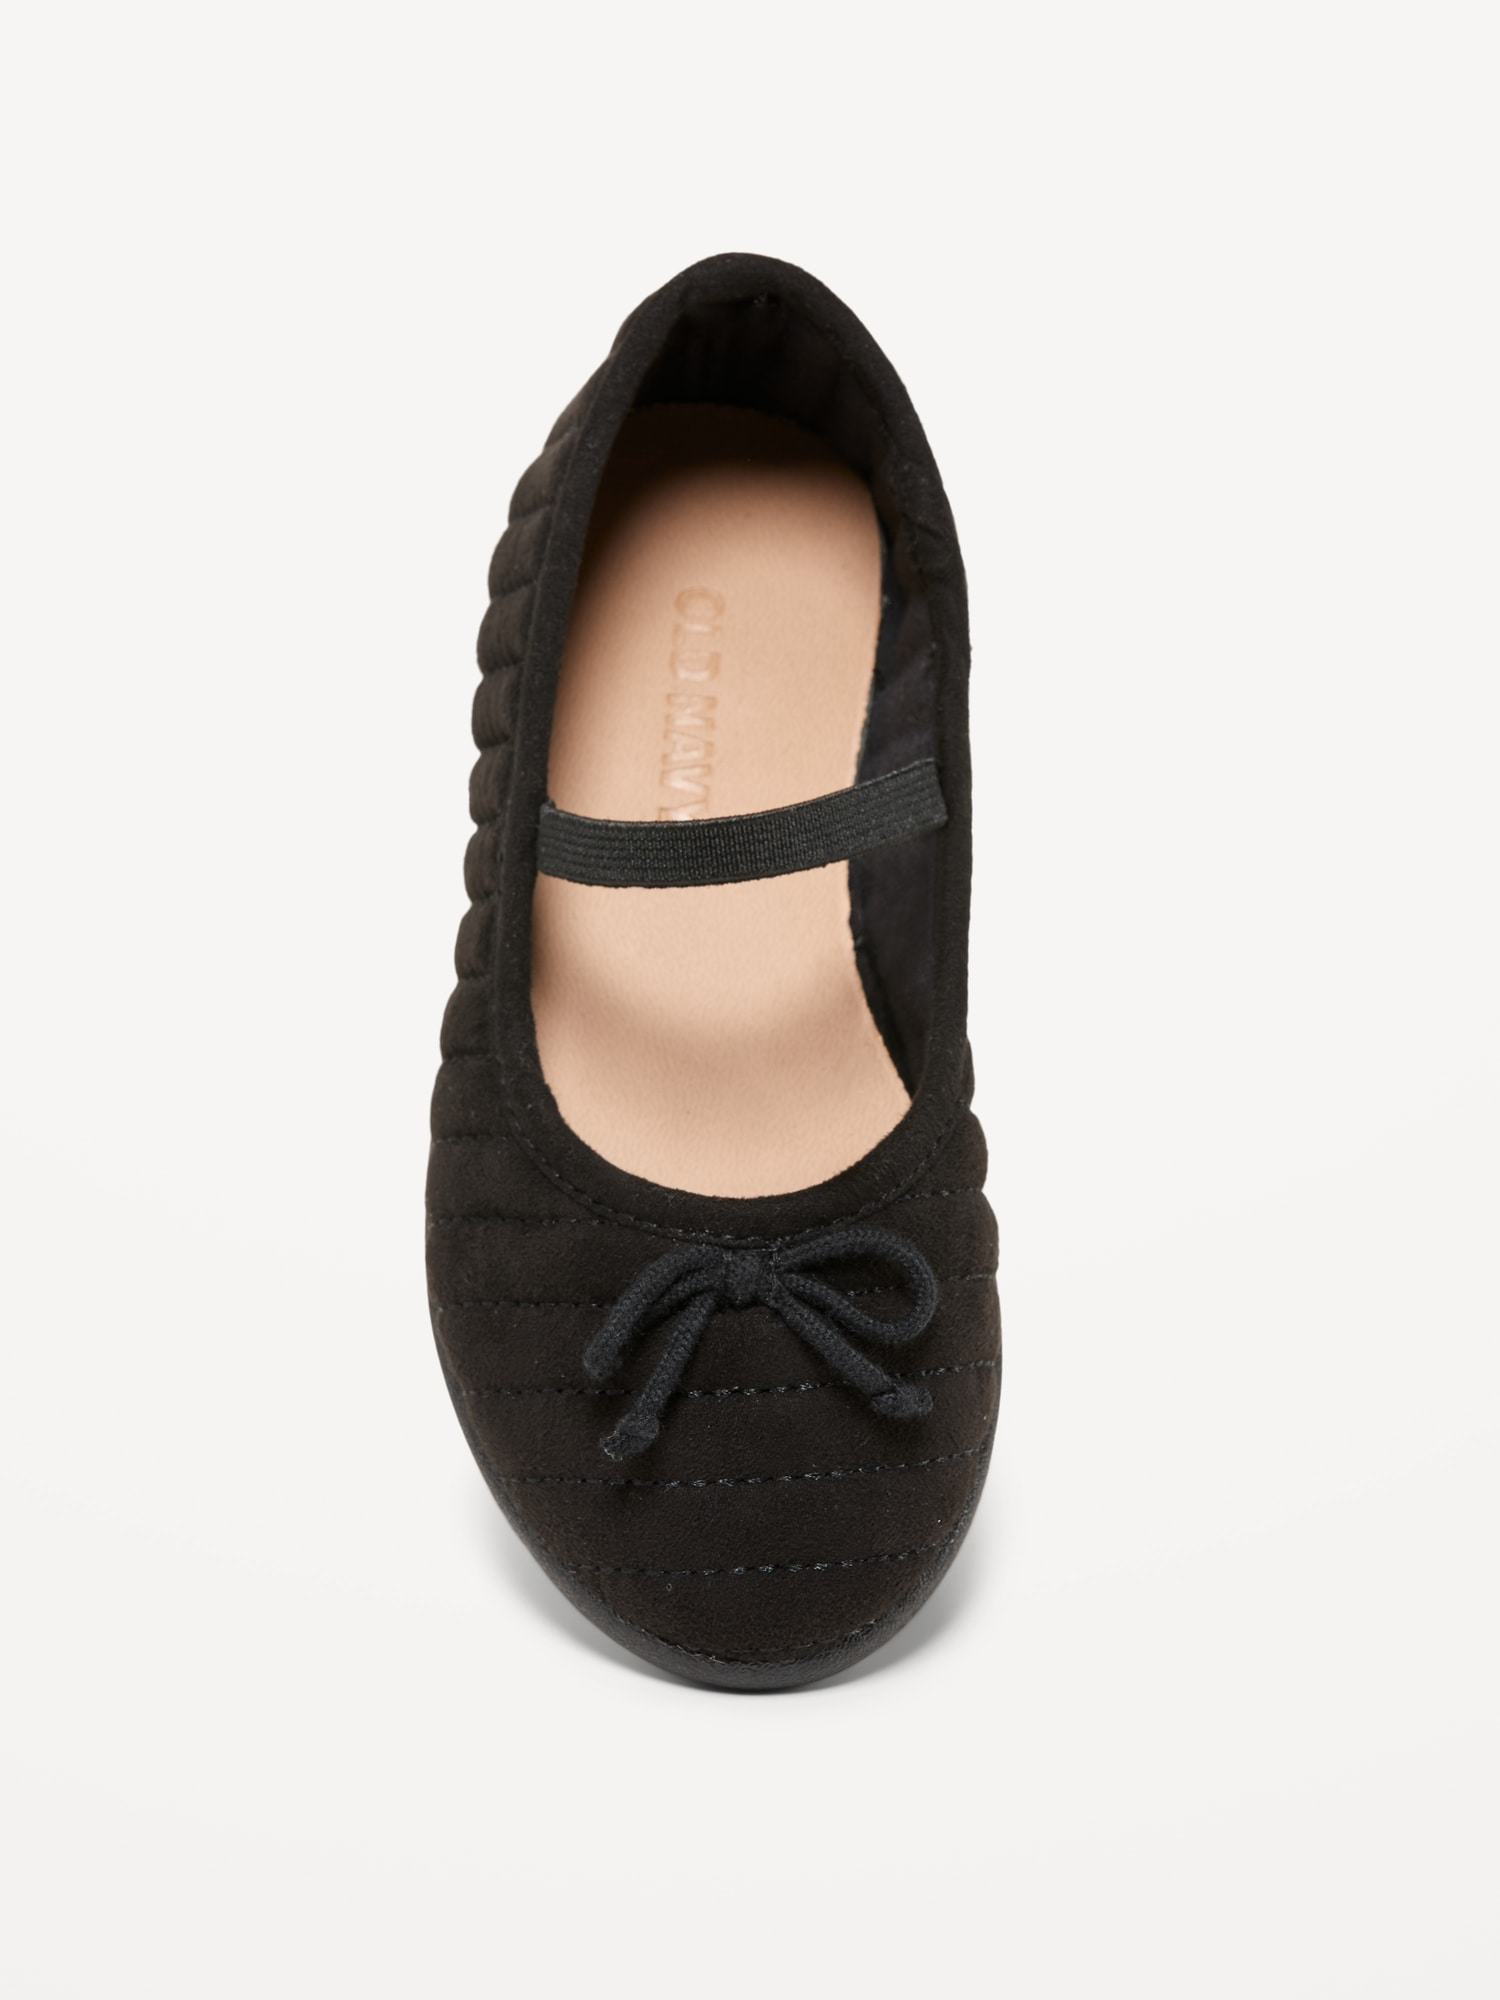 Zapatillas negras flats Old navy niña – Kima Shop